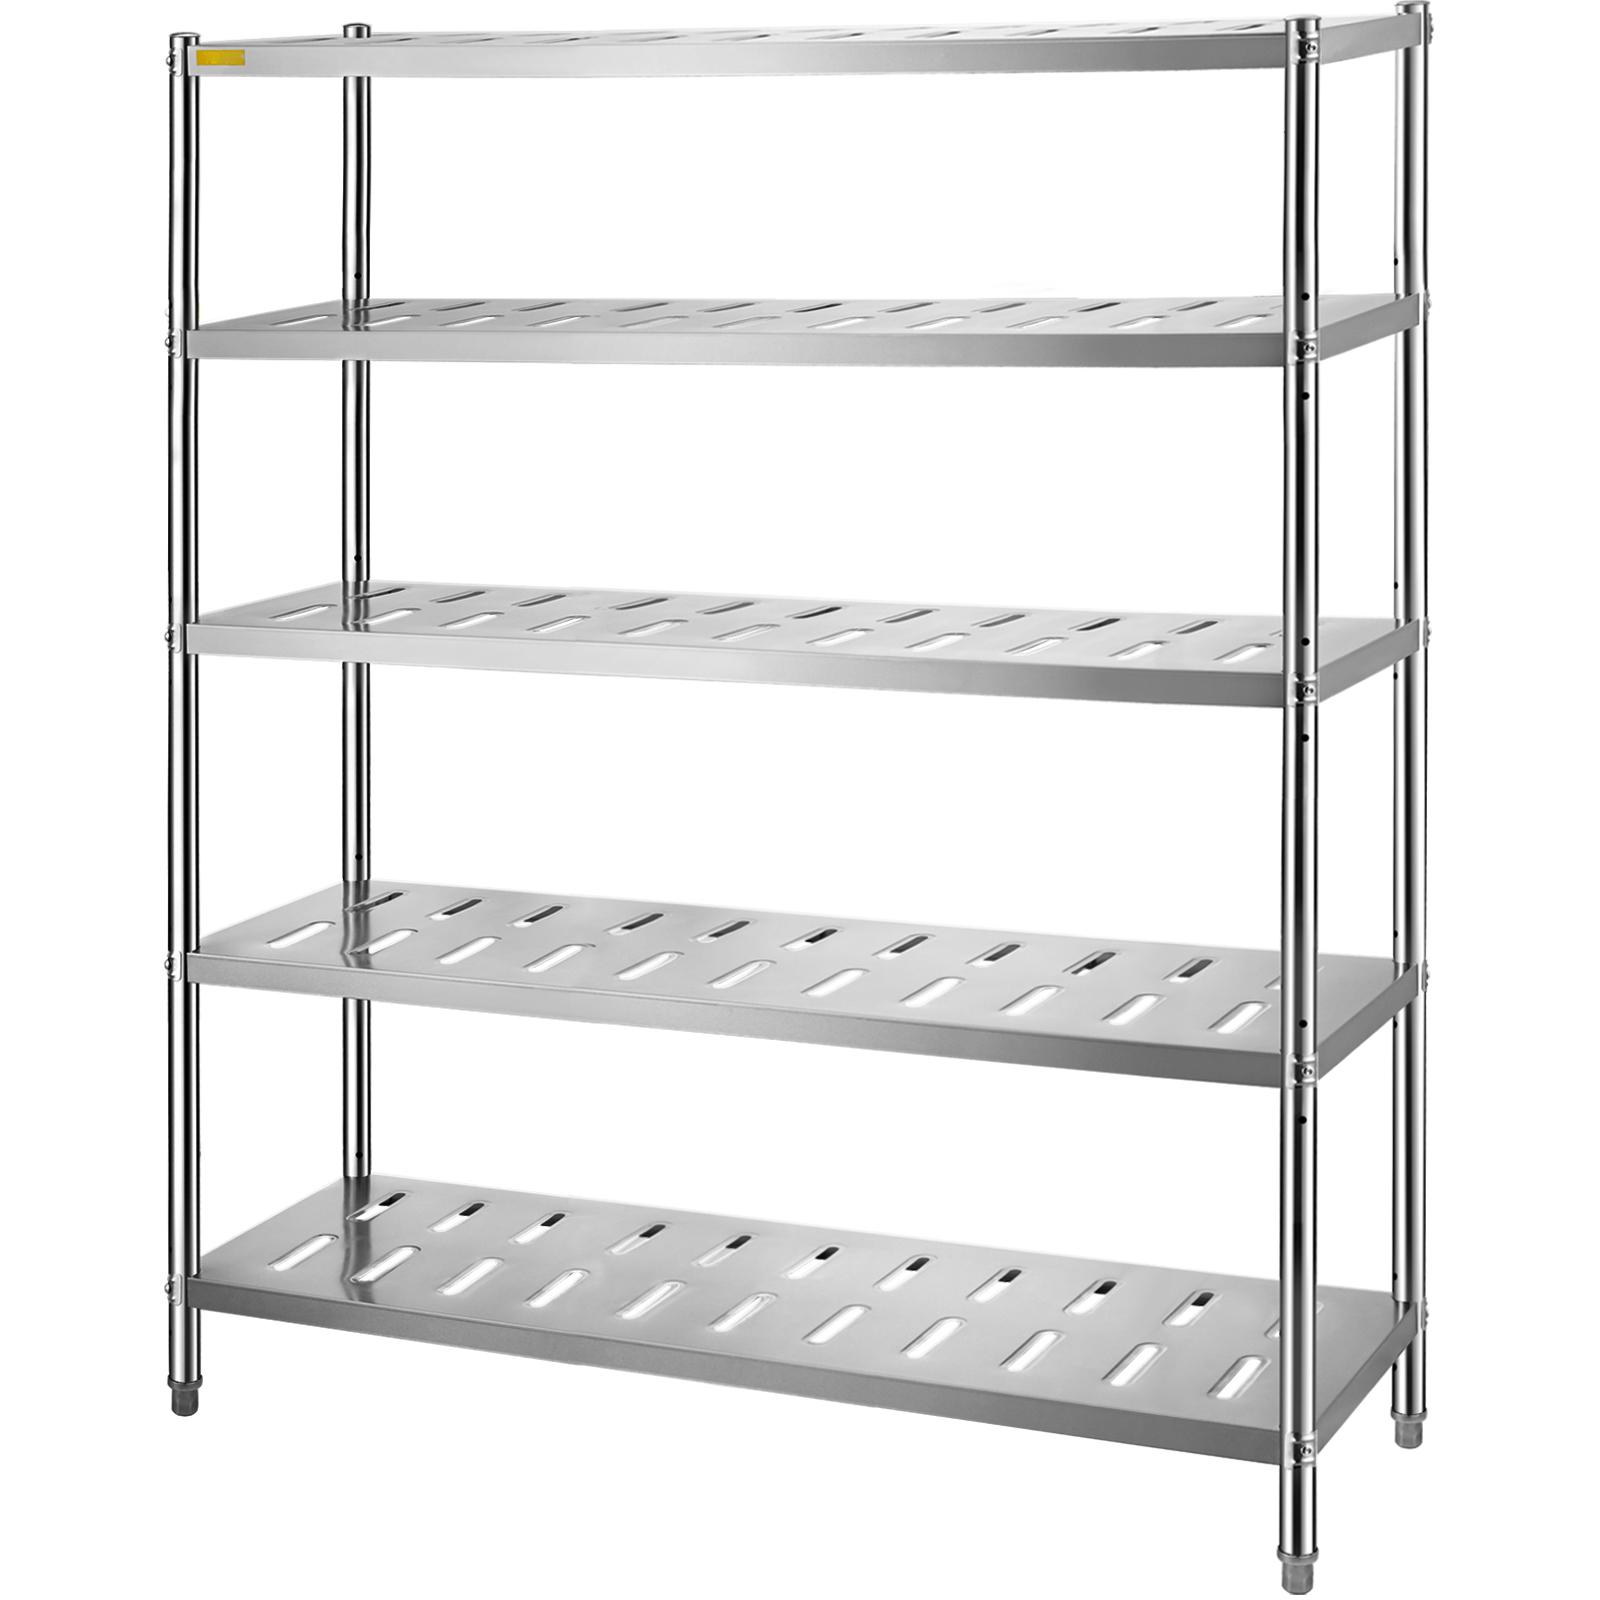 Vevor Garage Shelf 5 Level Storage Adjustable Shelves Unit 59.1x17.7x70.9 In от Vevor Many GEOs